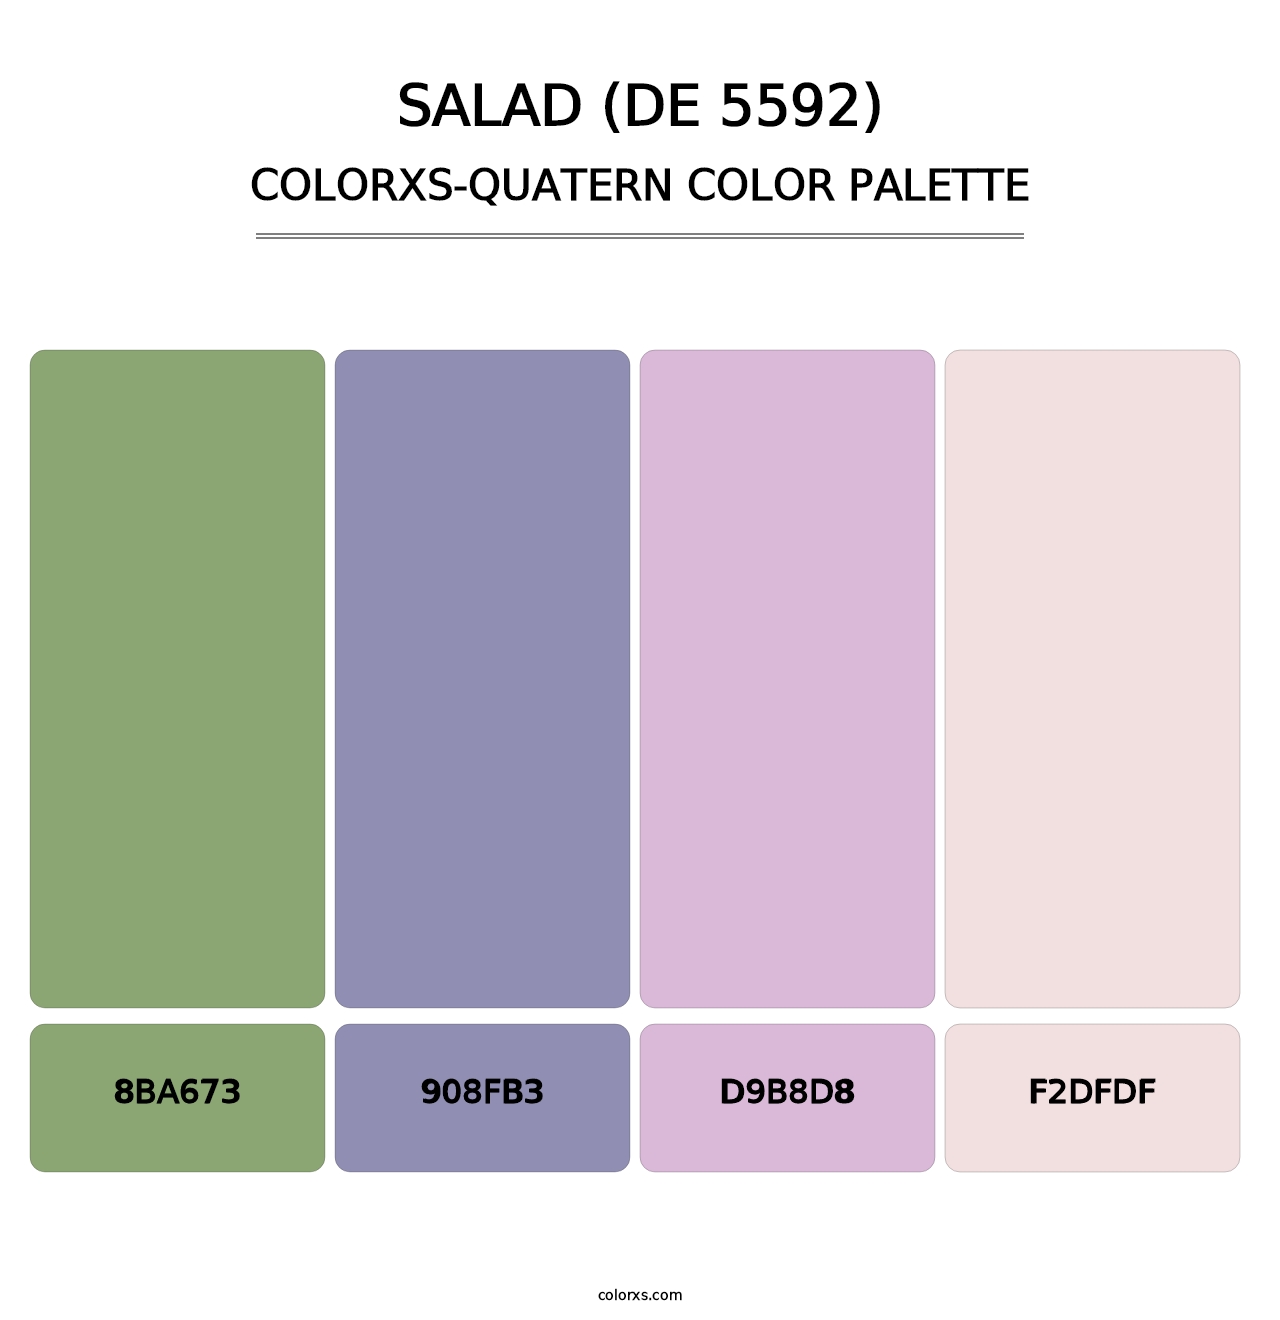 Salad (DE 5592) - Colorxs Quatern Palette